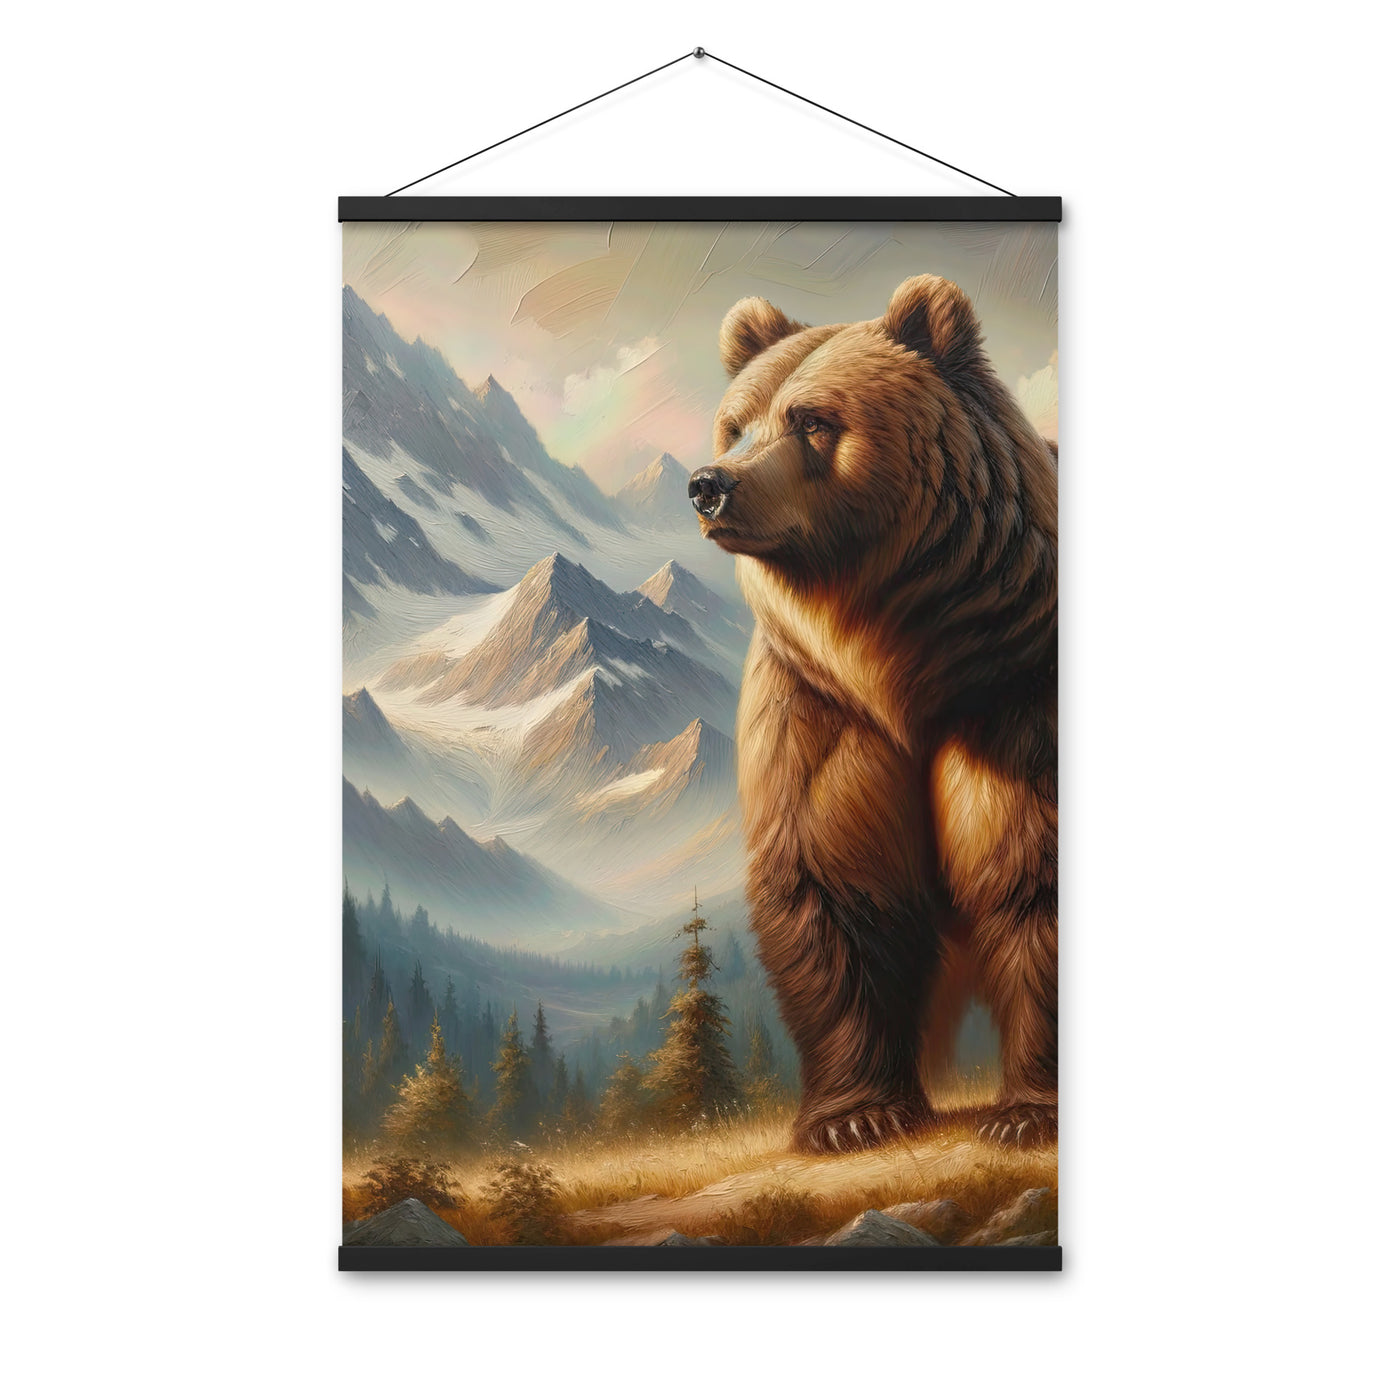 Ölgemälde eines königlichen Bären vor der majestätischen Alpenkulisse - Premium Poster mit Aufhängung camping xxx yyy zzz 61 x 91.4 cm